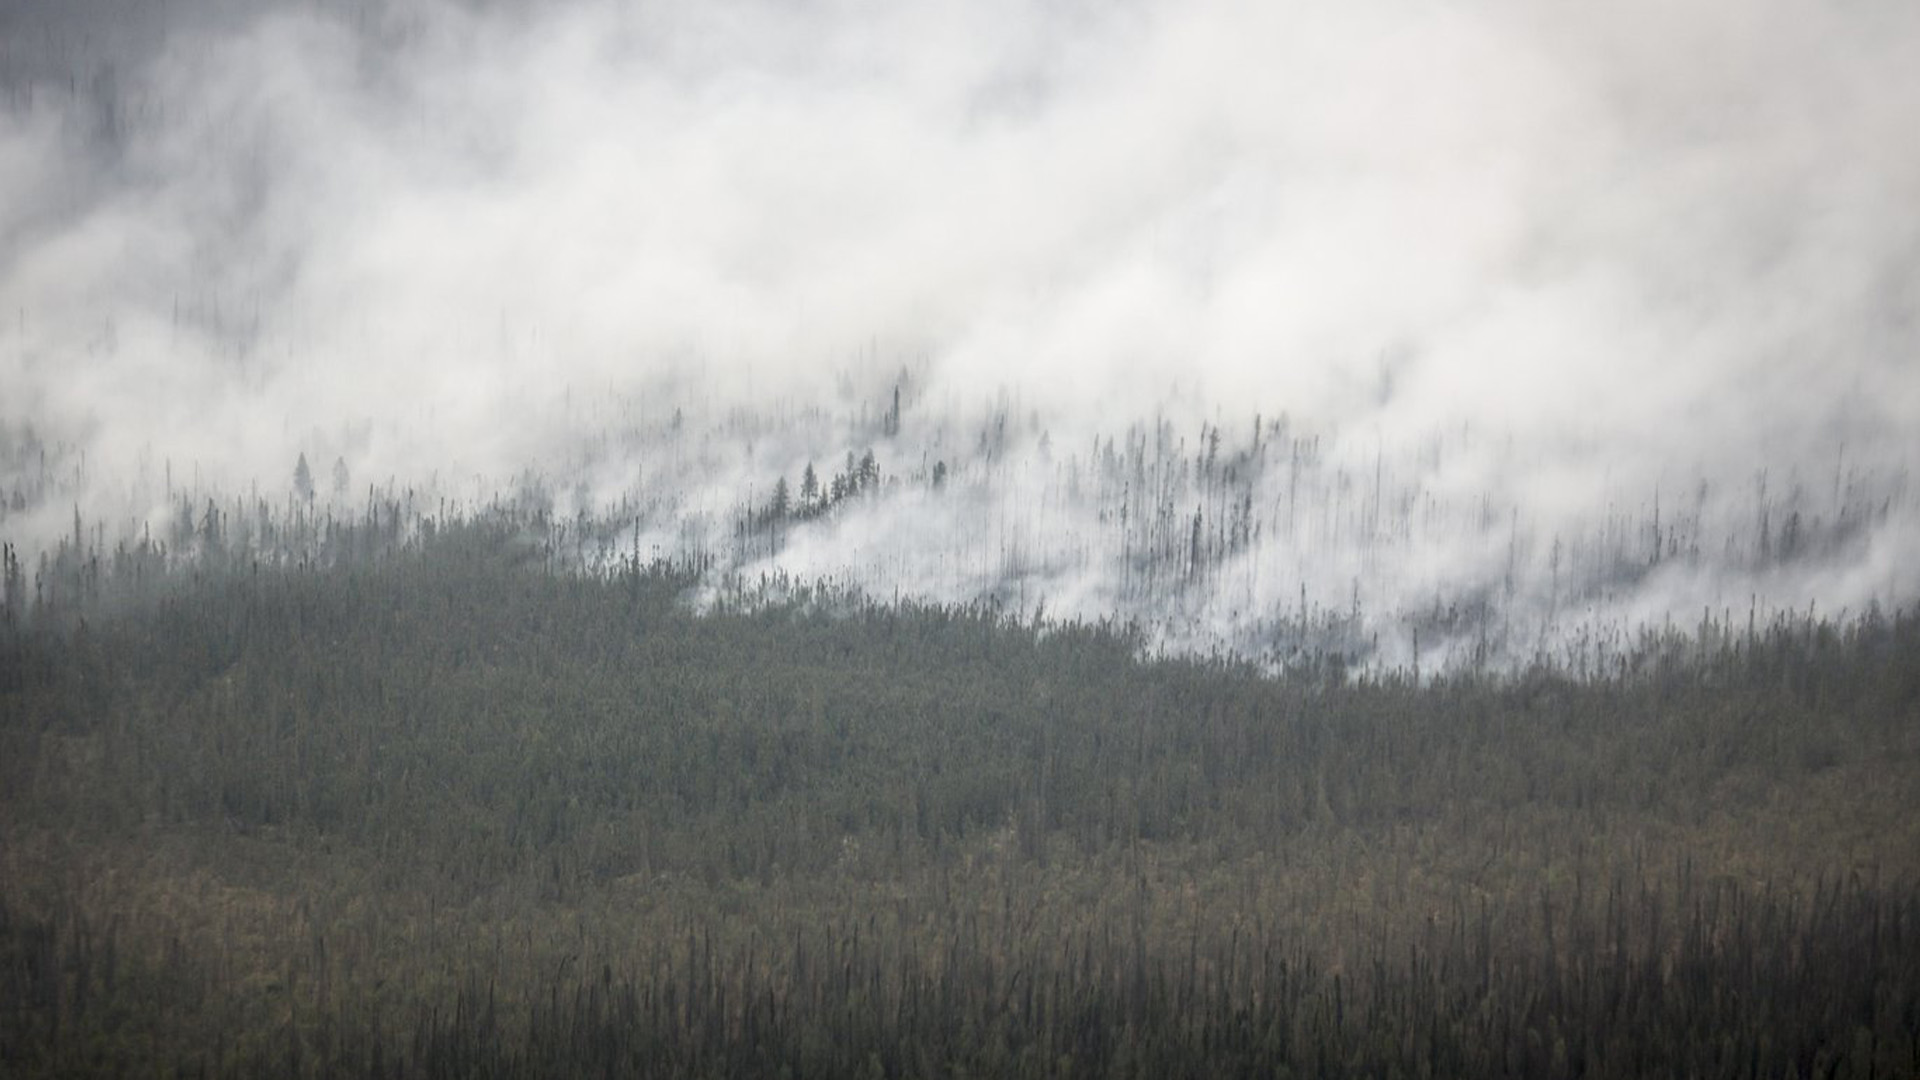 Un incendie de forêt brûle au sud d'Enterprise, dans les Territoires du Nord-Ouest, le jeudi 17 août 2023. Un responsable des incendies de forêt affirme que la ville de Hay River sera à risque au cours des prochains jours en raison de vents violents et de températures élevées qui rendront la situation dangereuse encore pire.